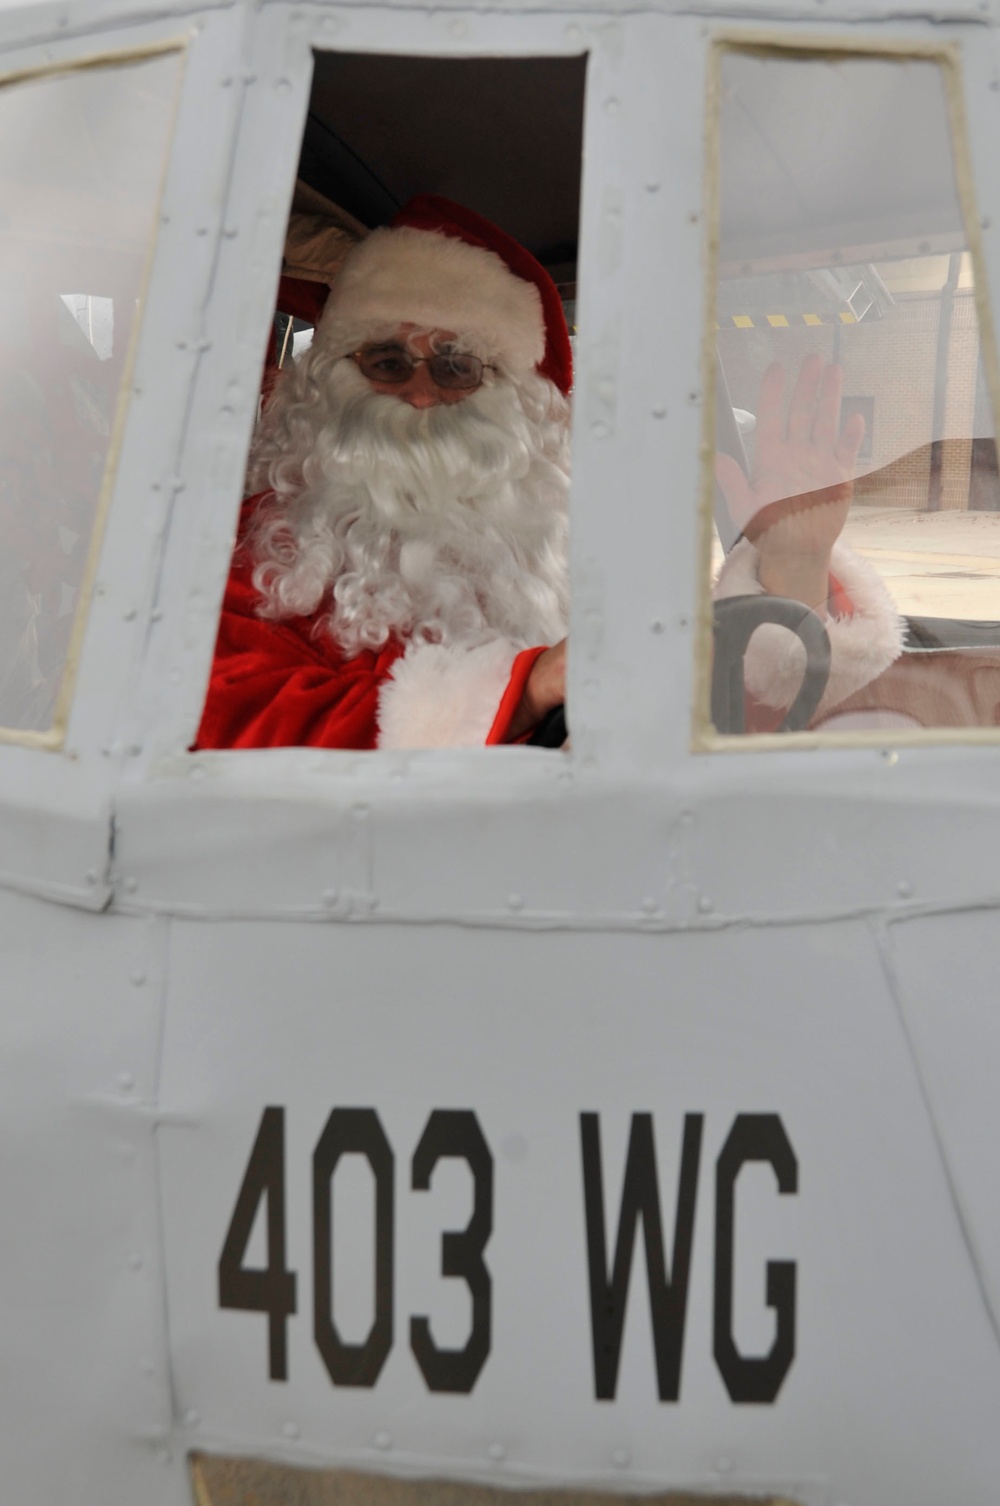 Santa visits 403rd Wing